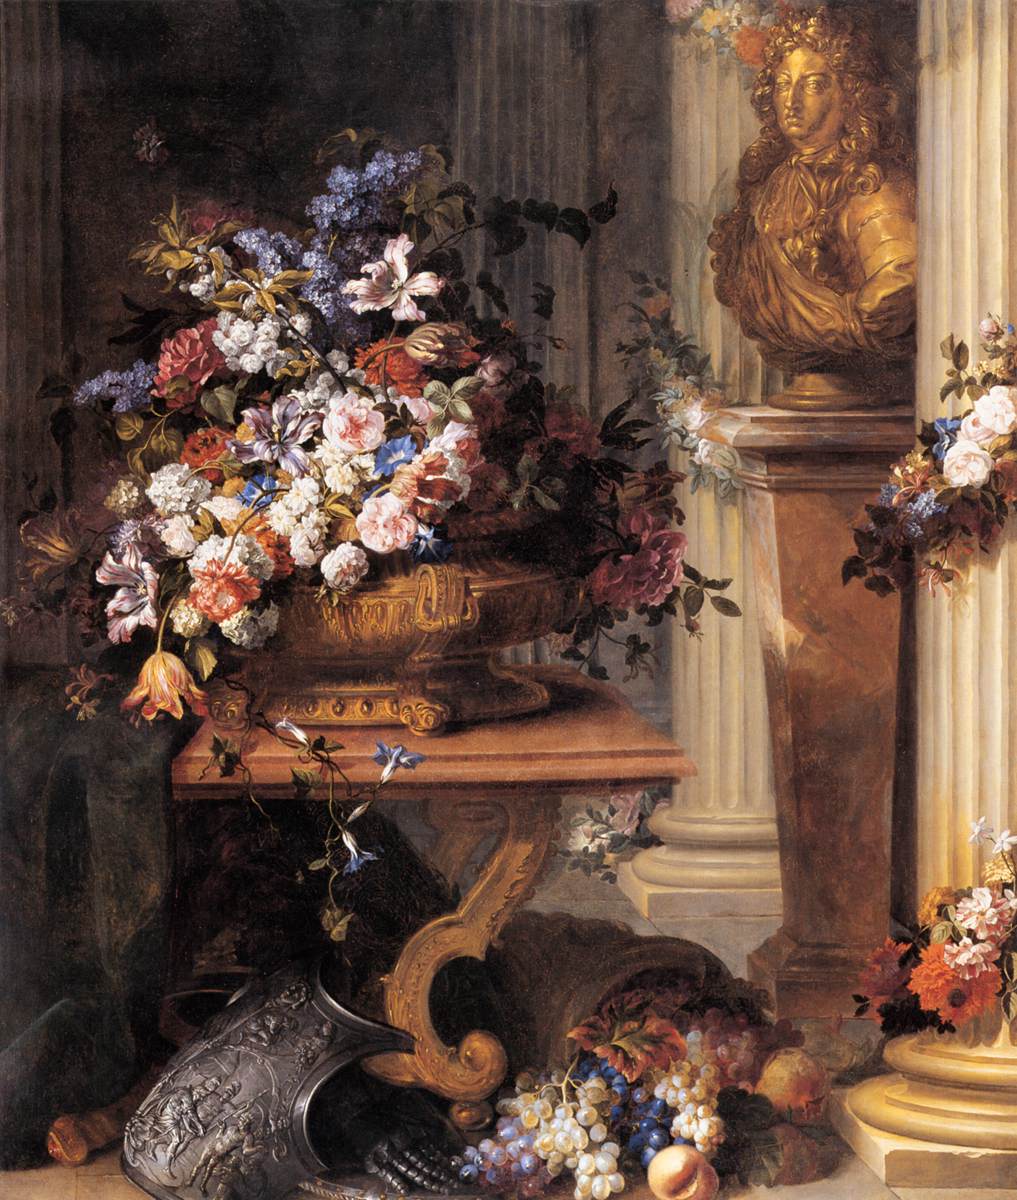 Blumen in einer goldenen Vase, Büste von Louis XIV, Horn der Fülle und Rüstung